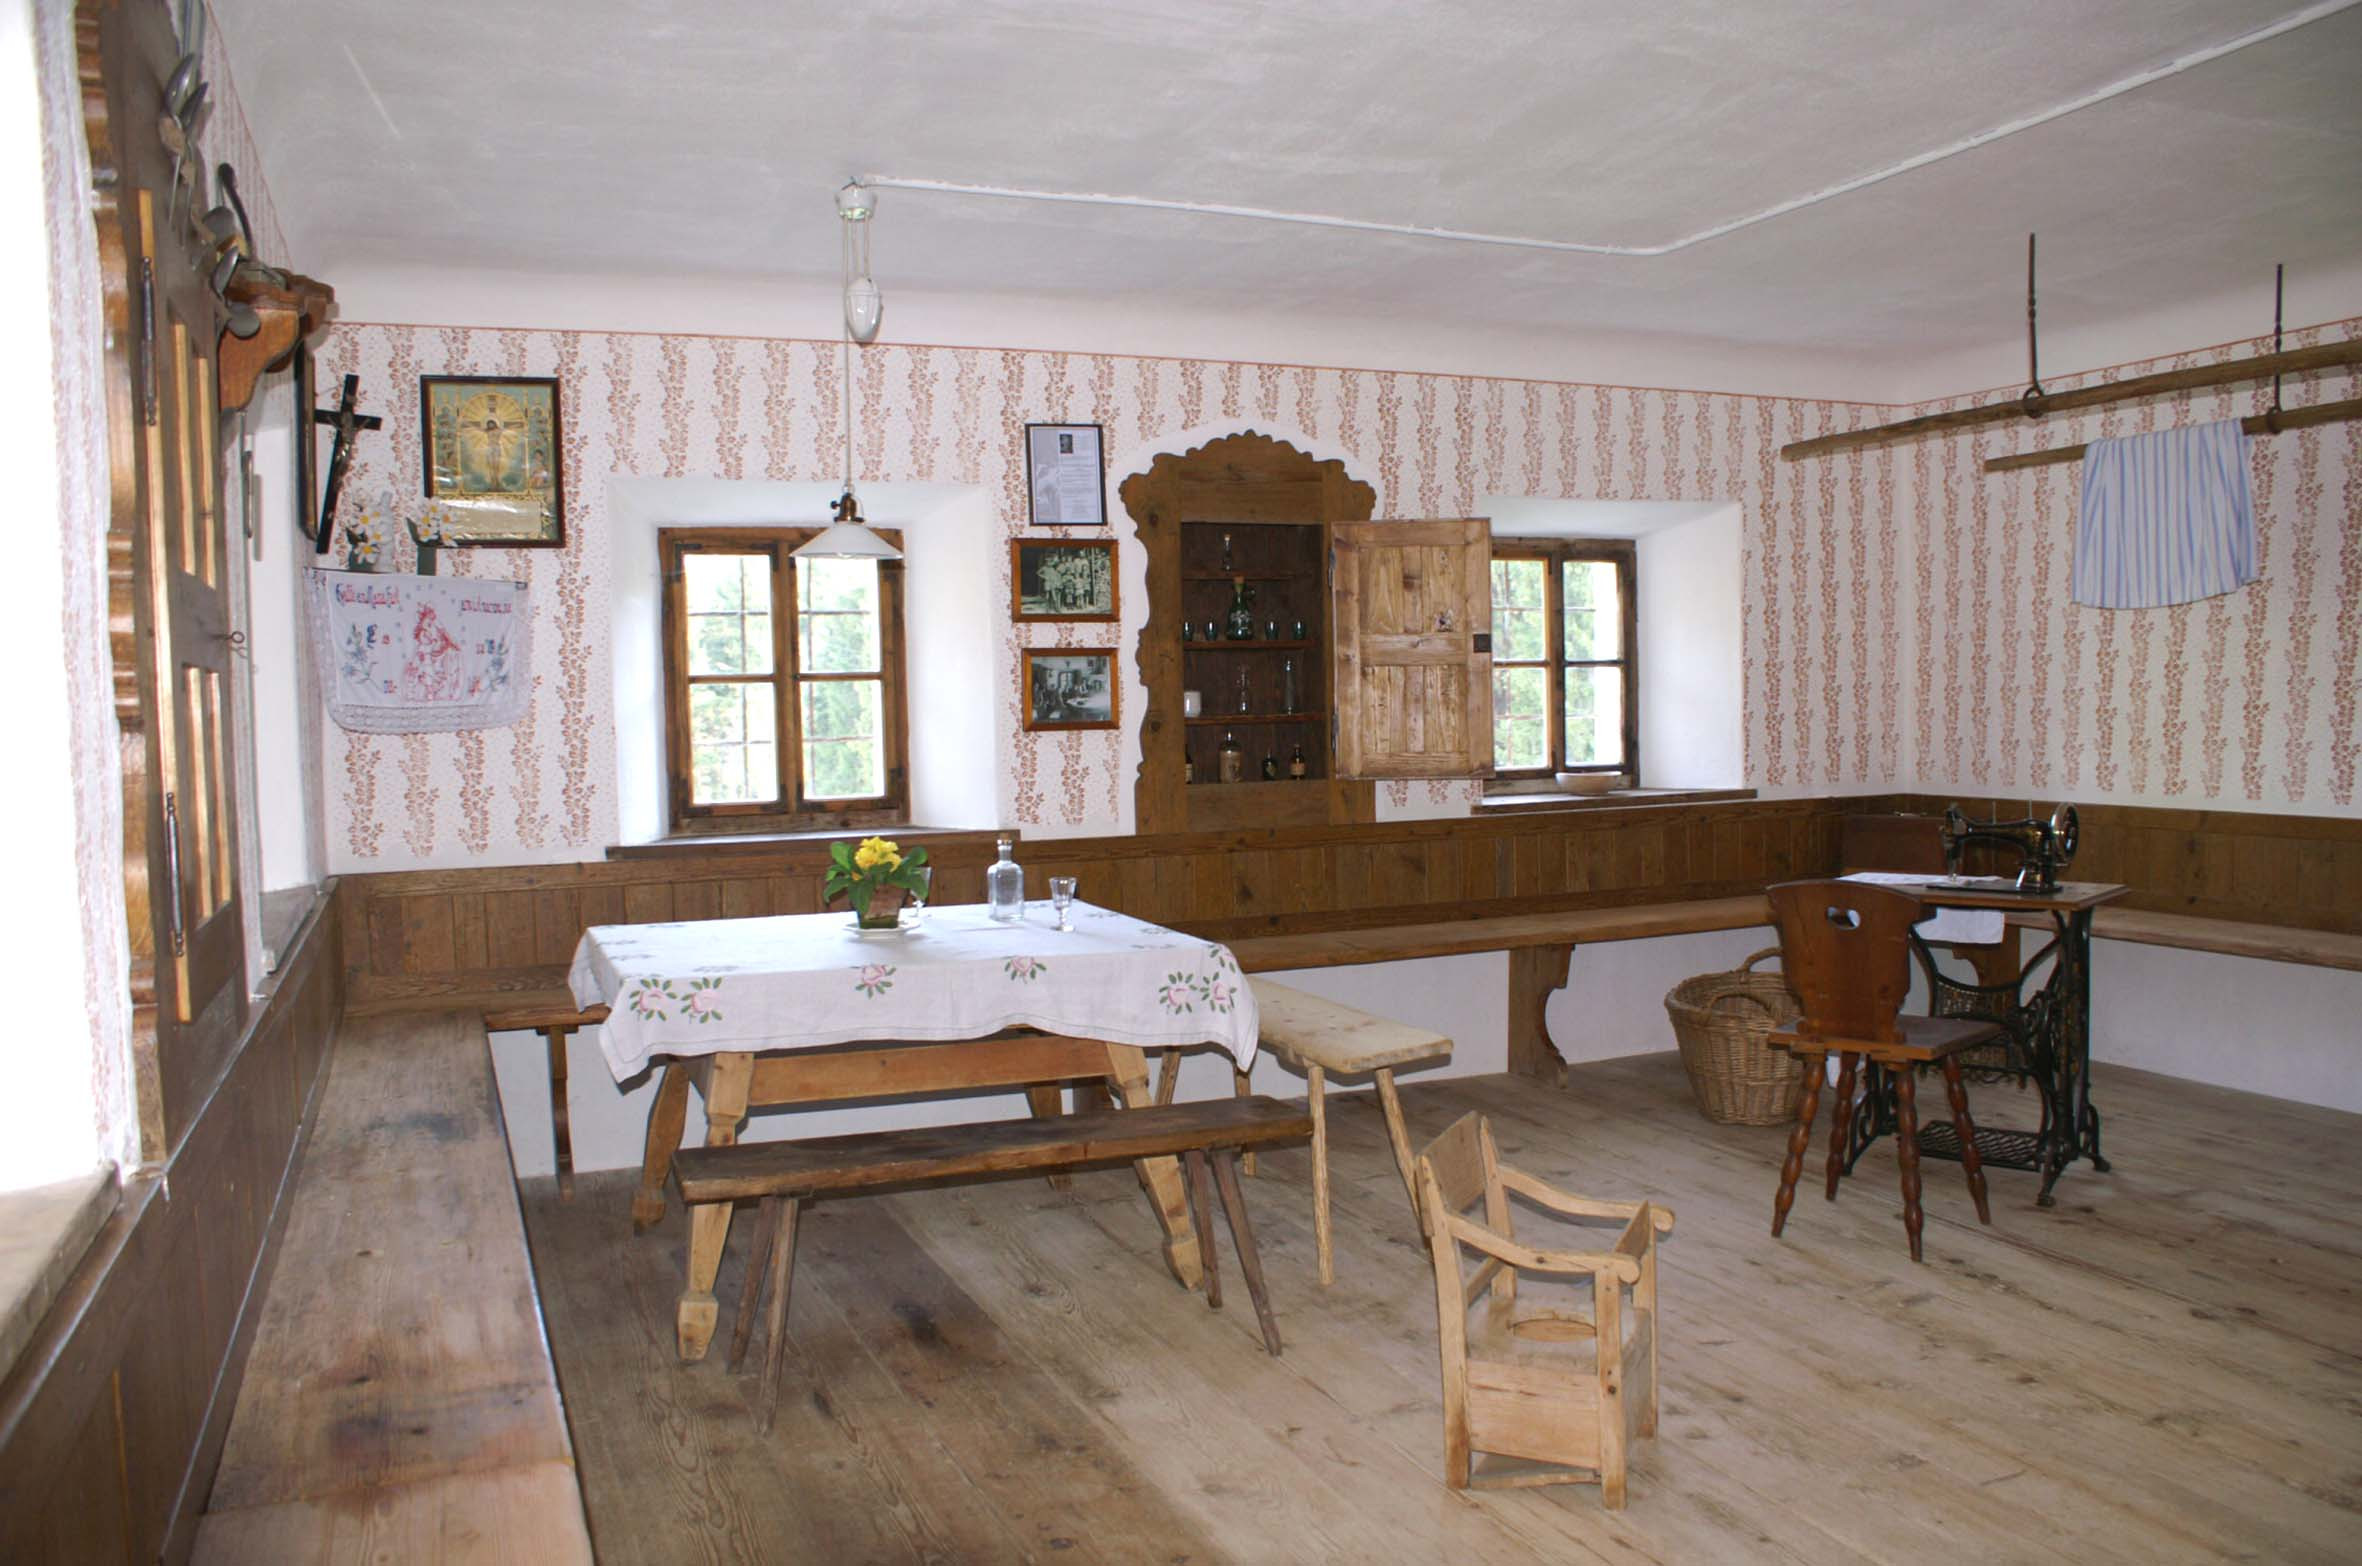 Wohnstube mit umlaufender Bank, rundem Tisch, Tretnähmaschine und Walzmustern an den Wänden